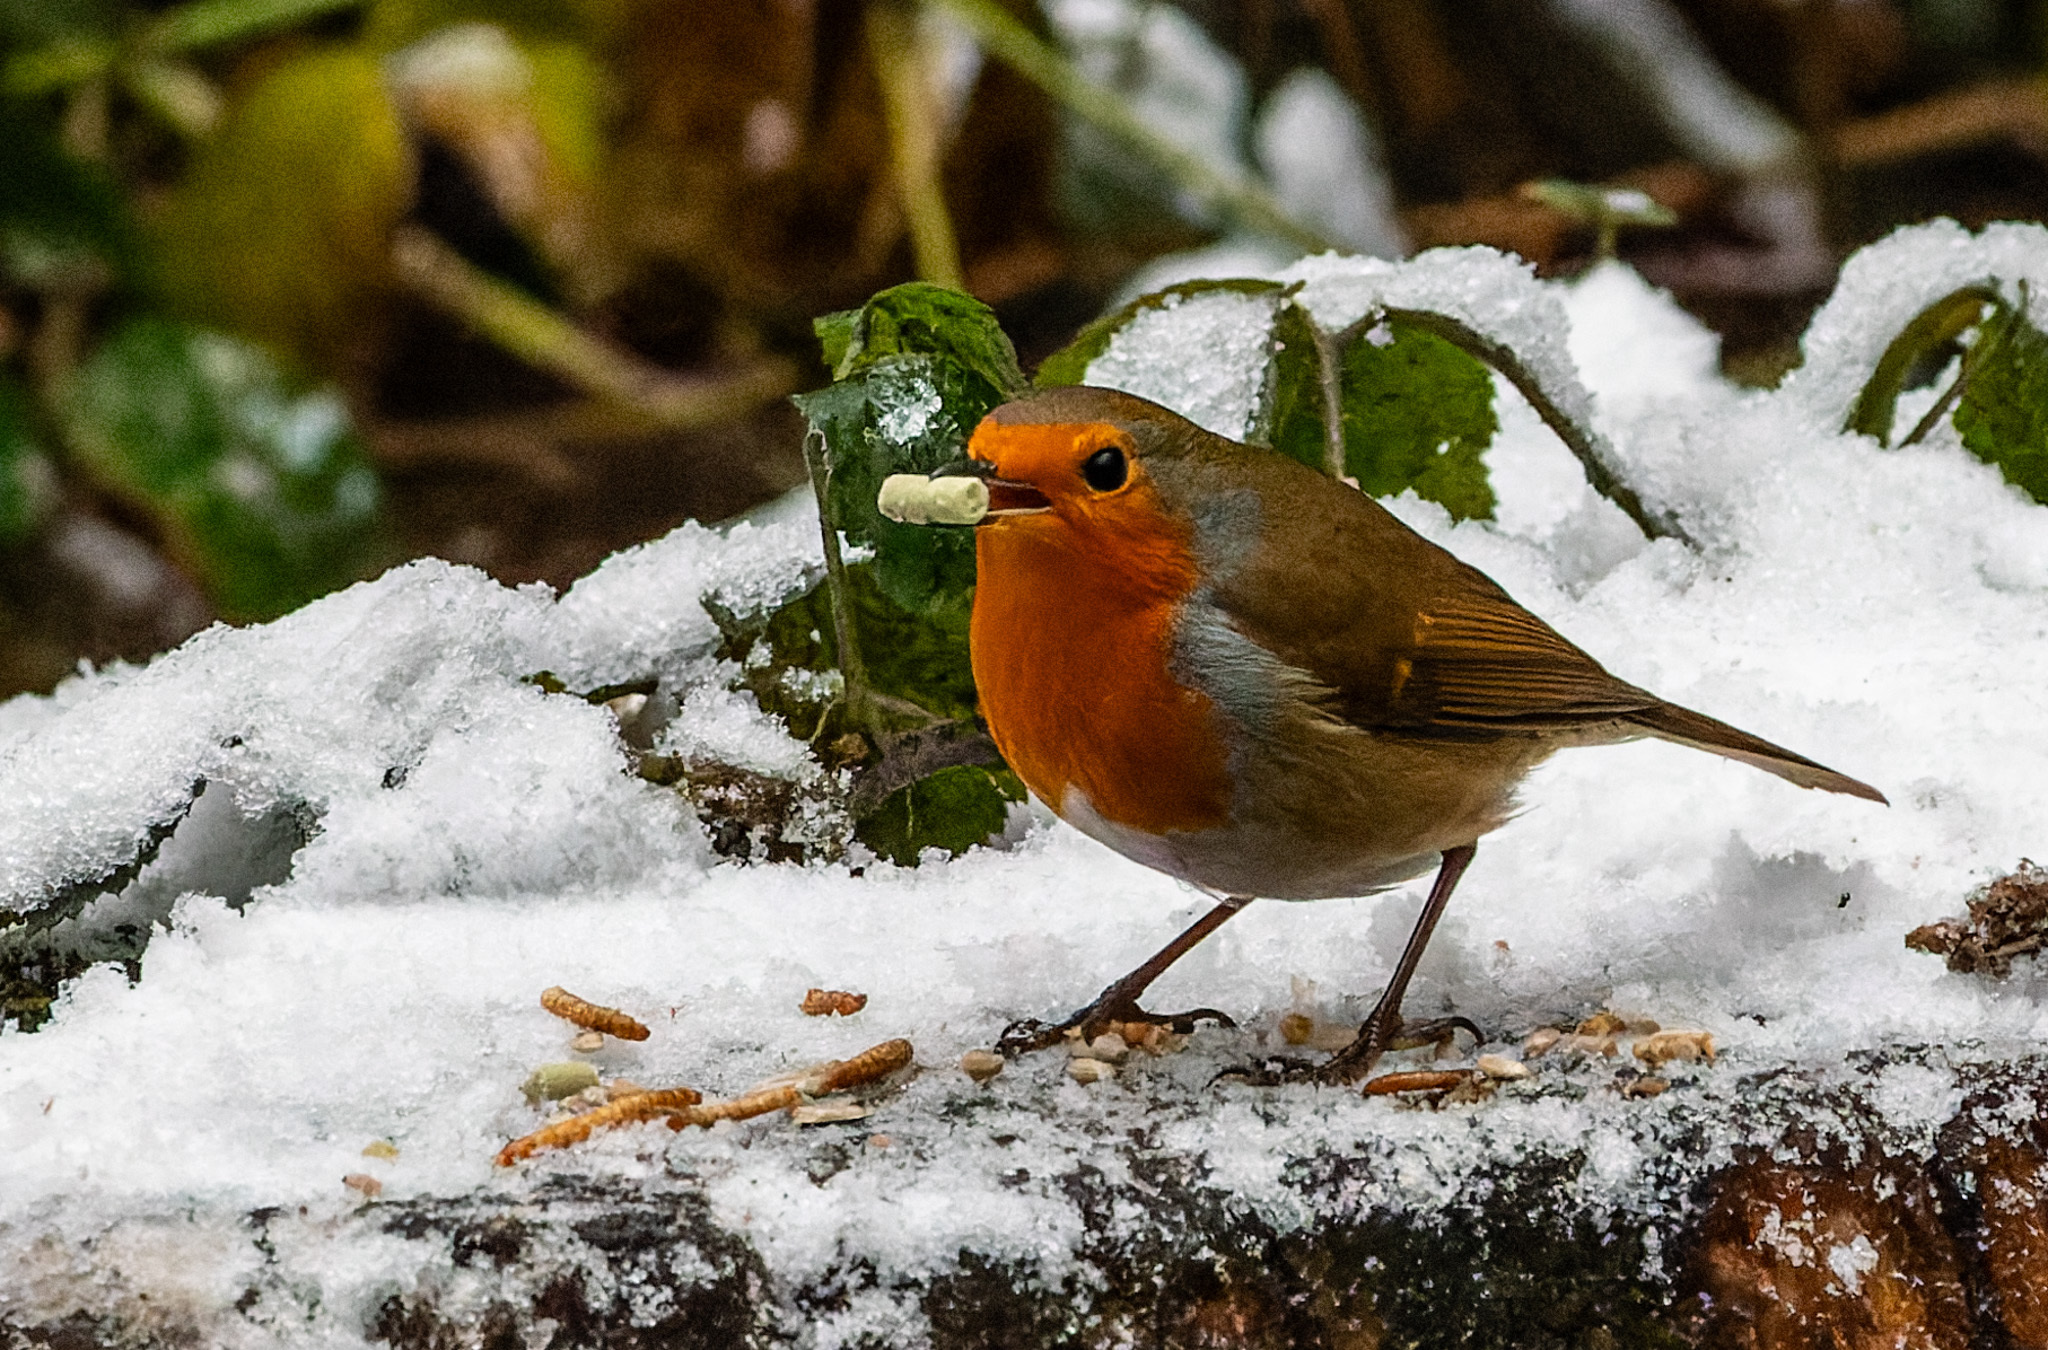 A festive robin by Ann ODonnell